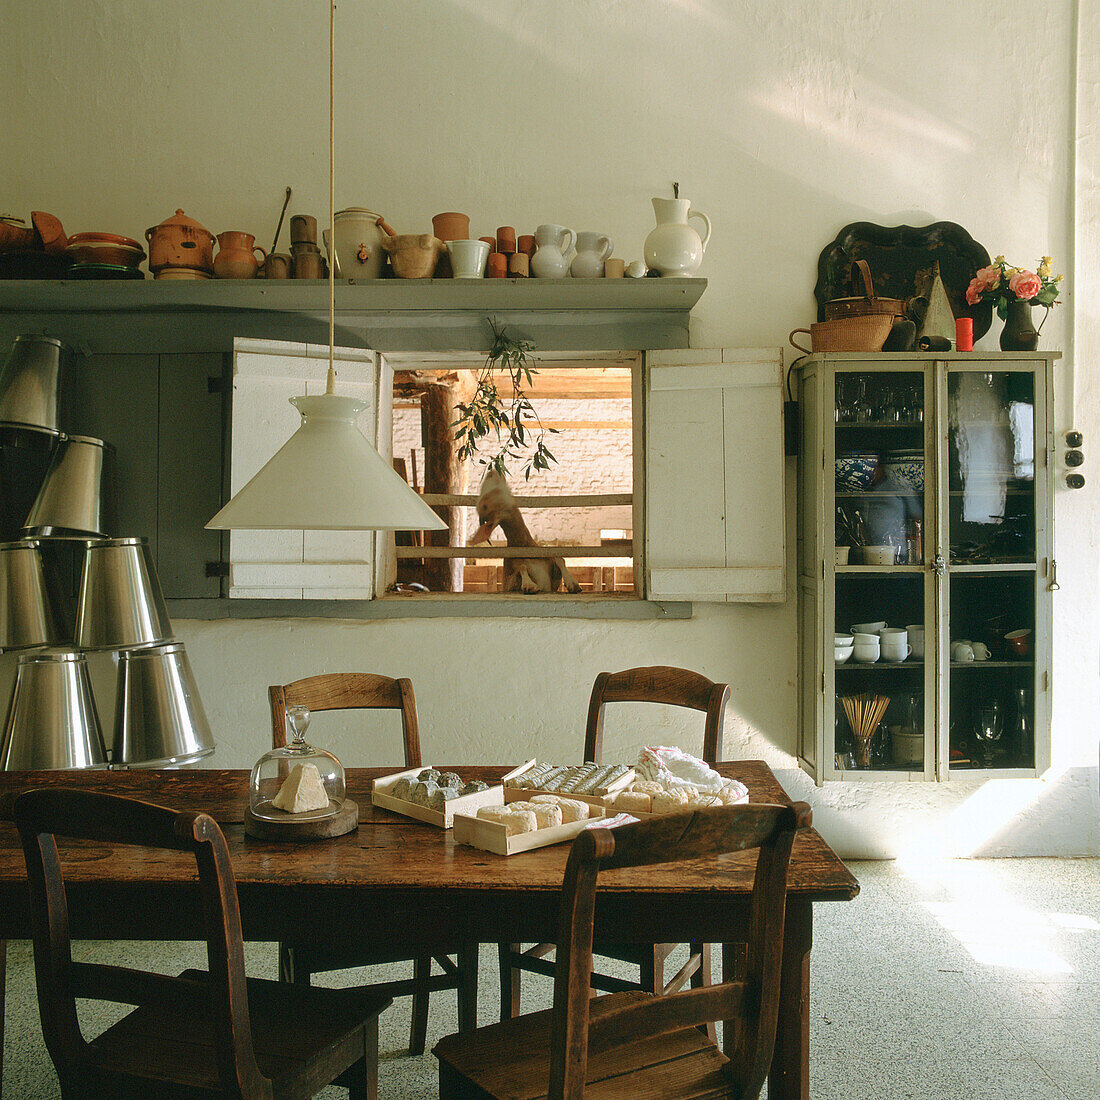 Holztisch und rustikale Regale mit Geschirr in der Landhausküche